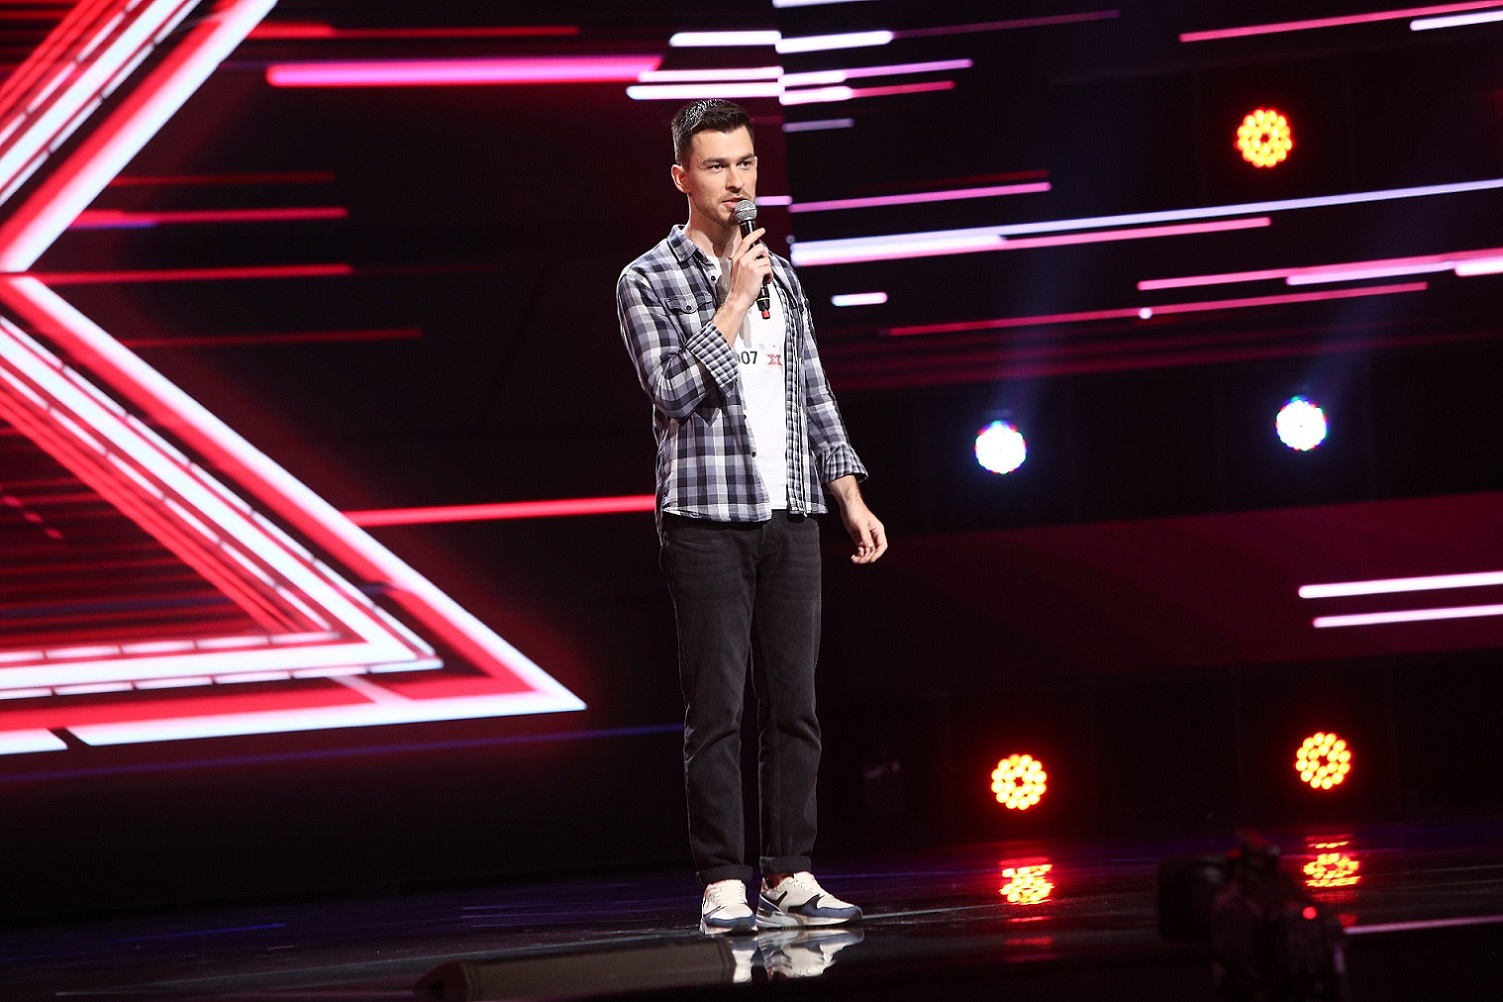 Diseară, de la 20.30, la Antena 1, Florin Iordache, fostul membru al trupei Krypton, va urca pe scena X Factor în calitate de concurent